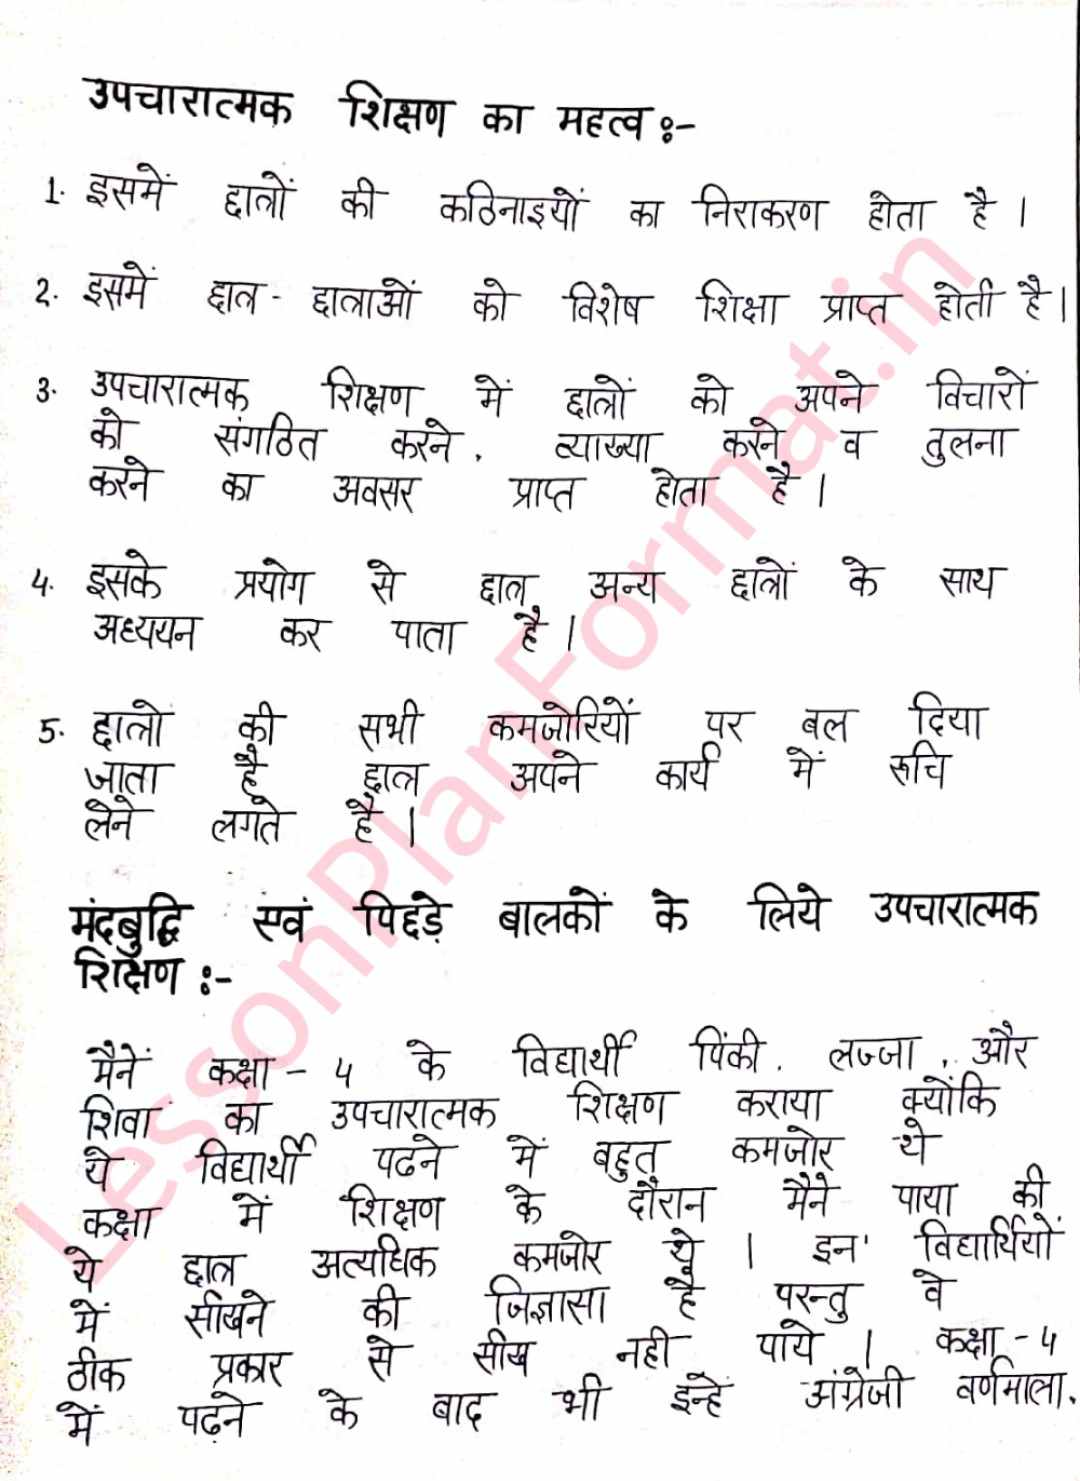 Upcharatmak Shikshan in Hindi